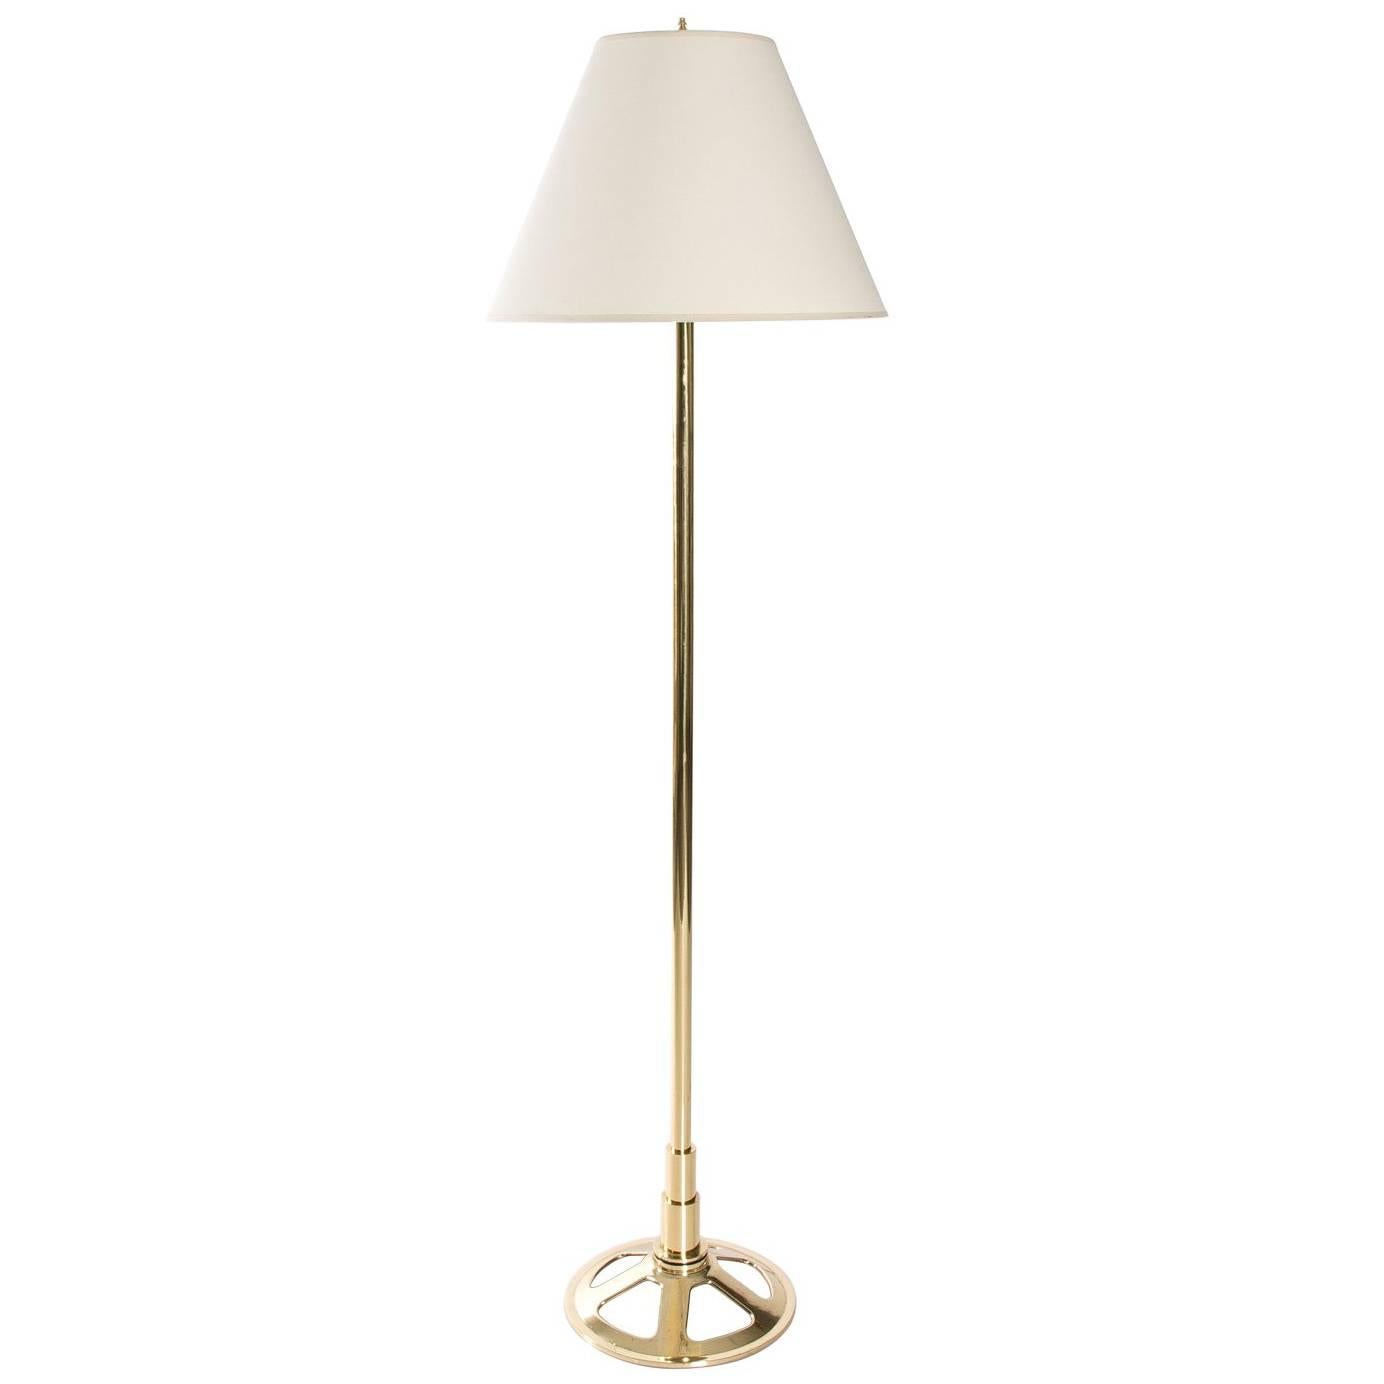 1940s Industrial Brass Floor Lamp